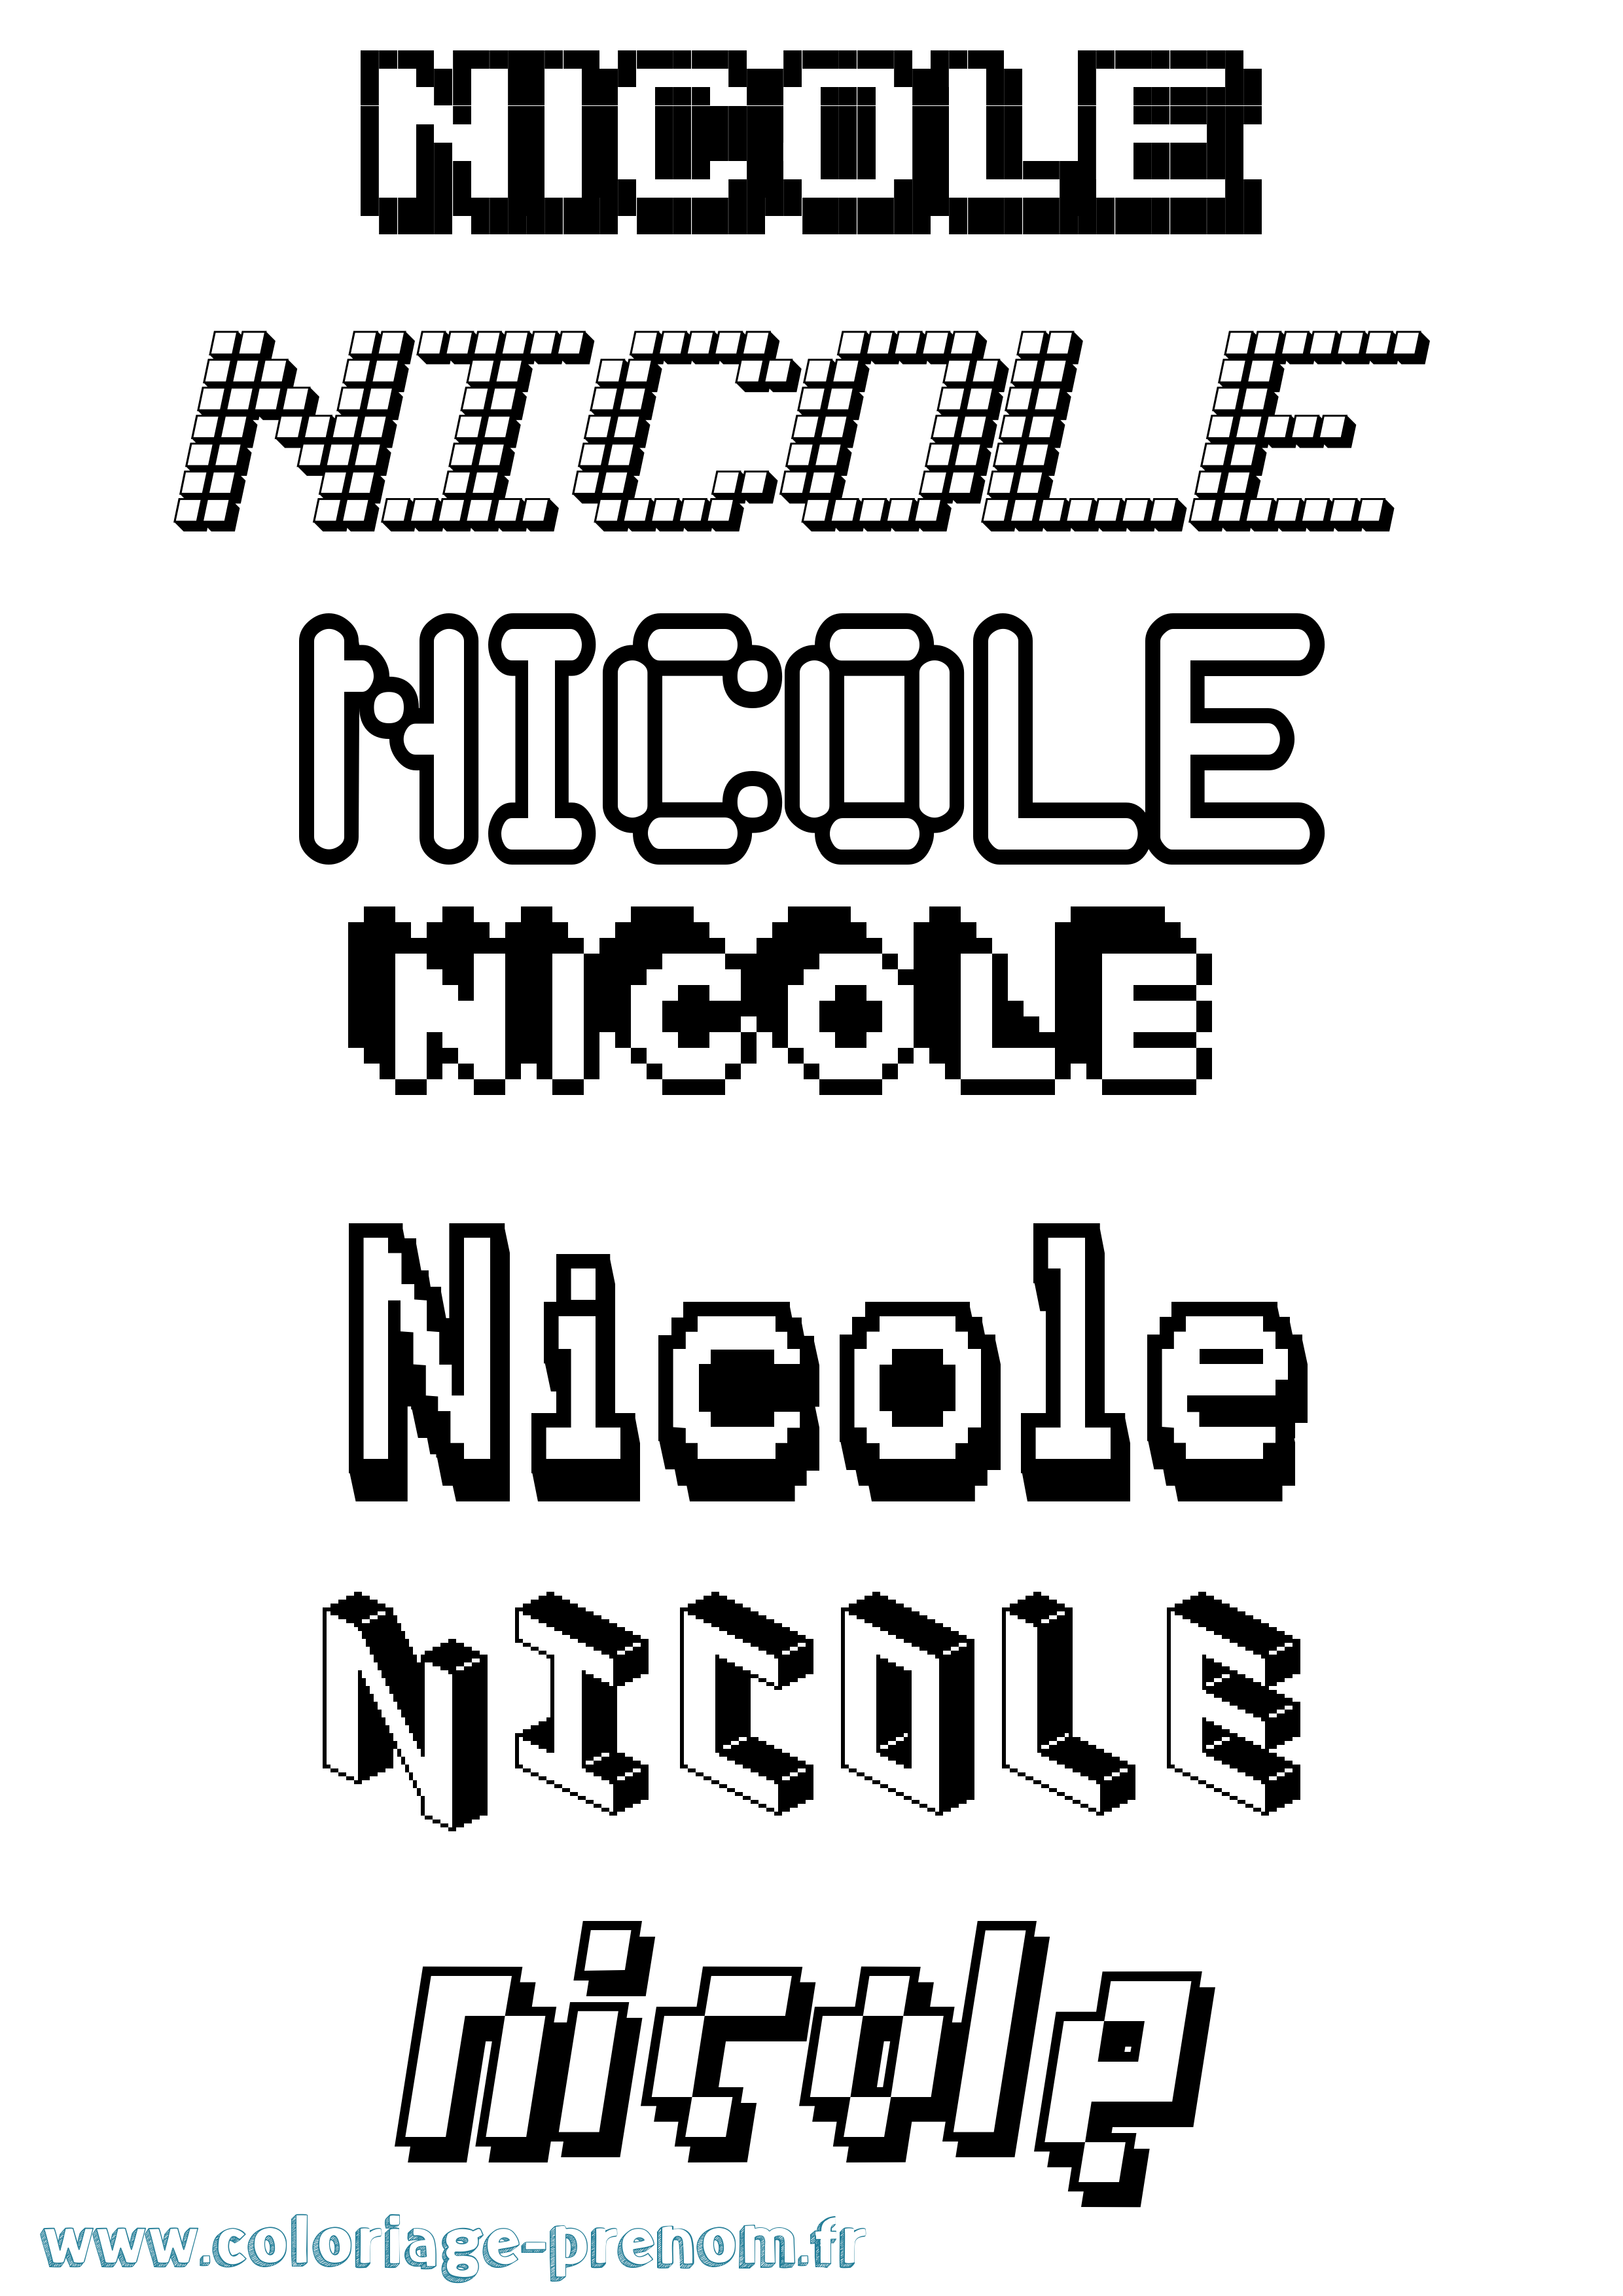 Coloriage prénom Nicole Pixel